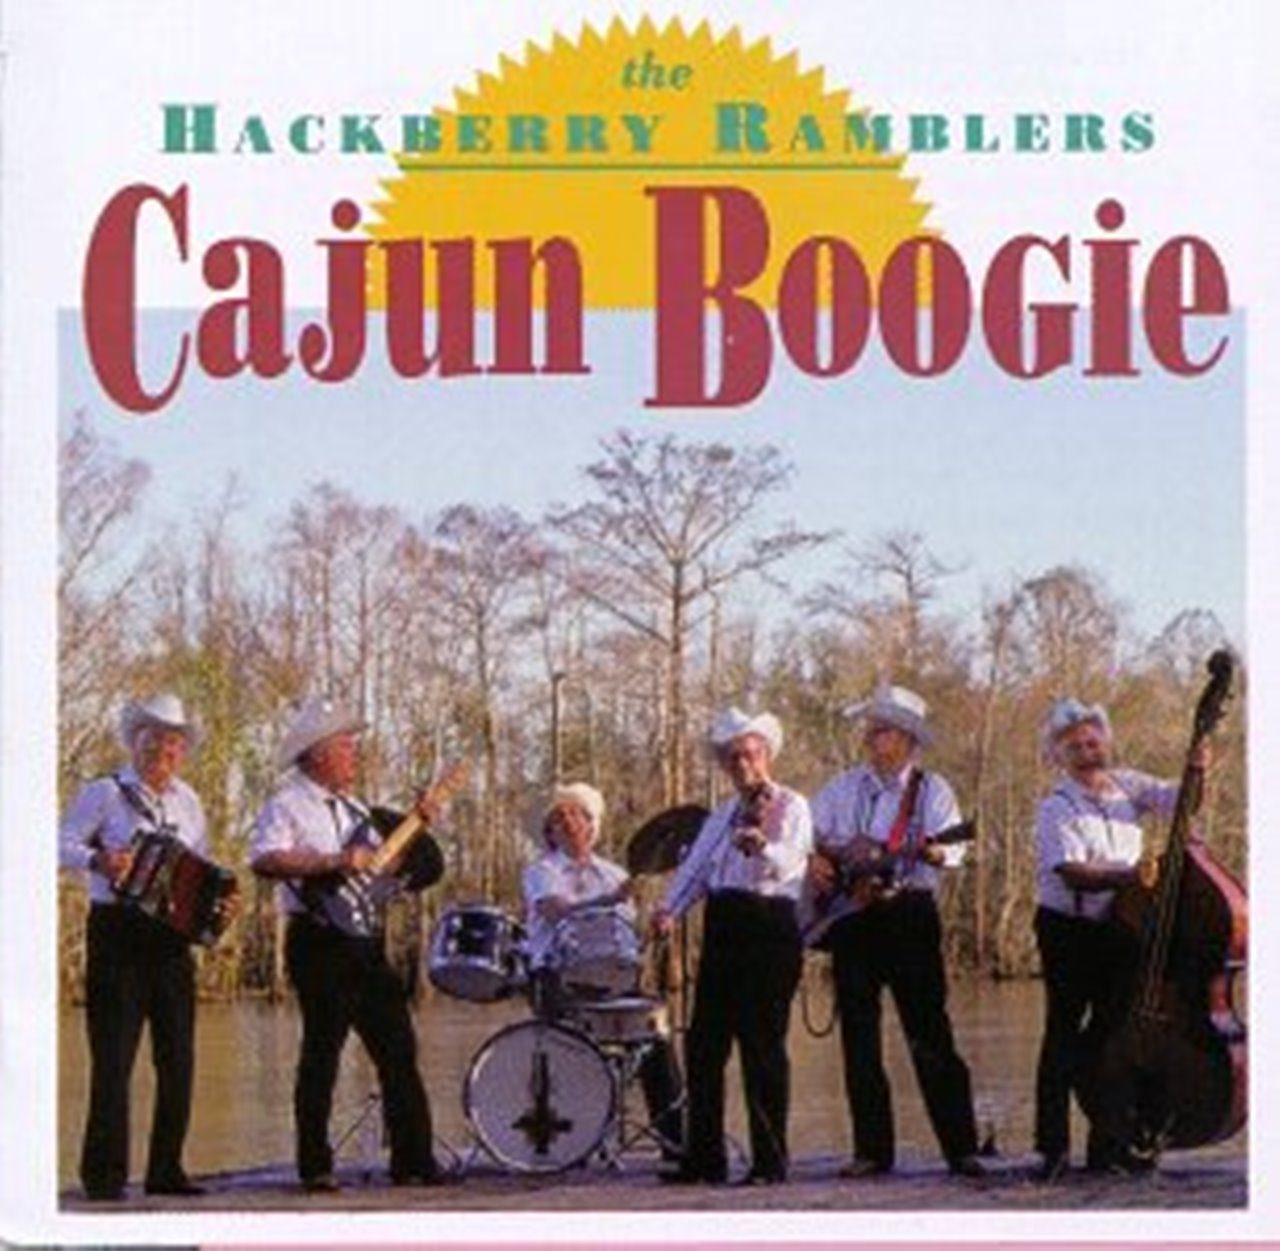 Hackberry Ramblers – Cajun Boogie cover album